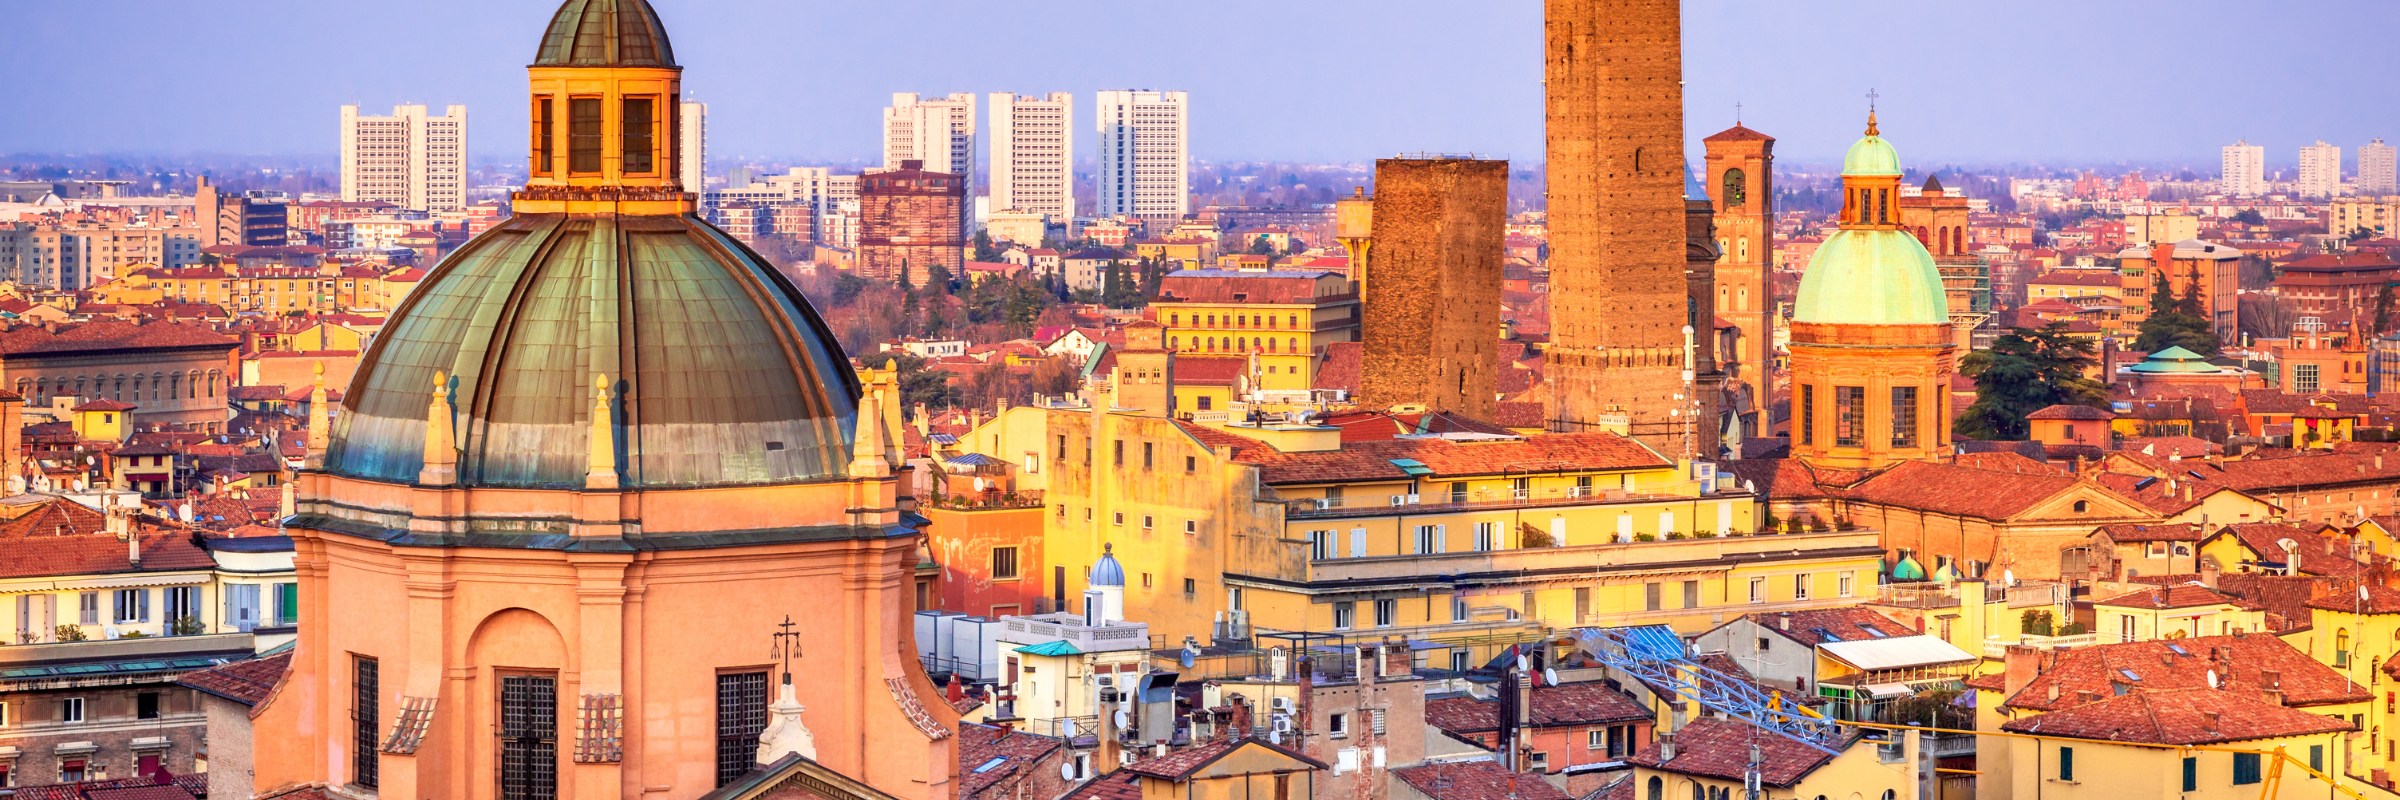 10 Seværdigheder i Bologna du ikke må gå glip af